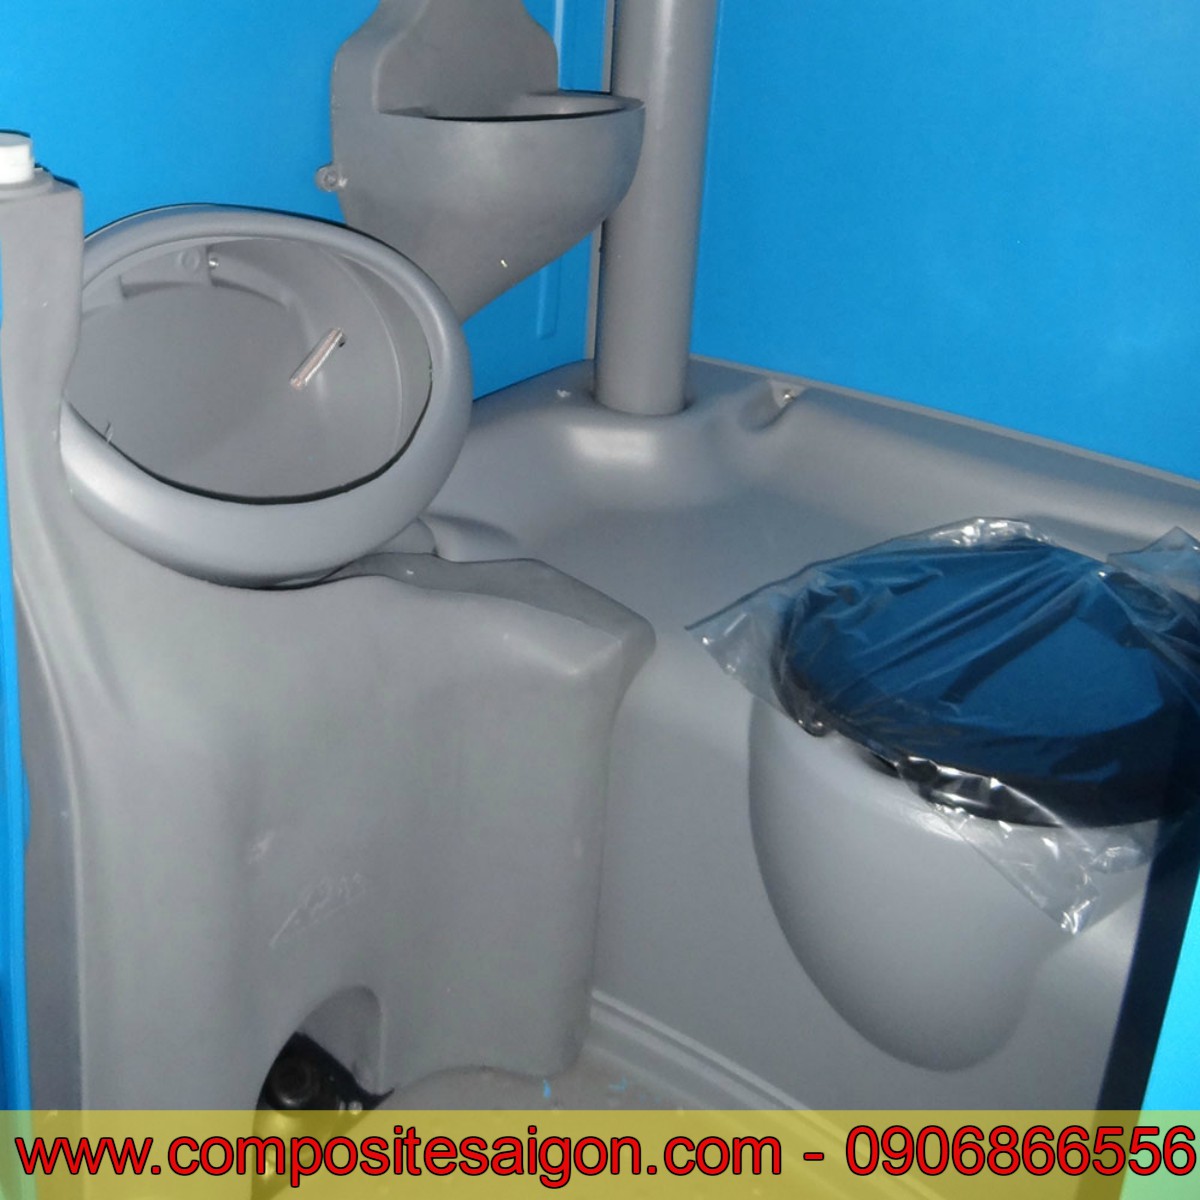 Nhà vệ sinh di động, Nhà vệ sinh composite, composite sài gòn, nhà vệ sinh, nhà vệ sinh tiện lợi, nhà vệ sinh chất liệu composite, 